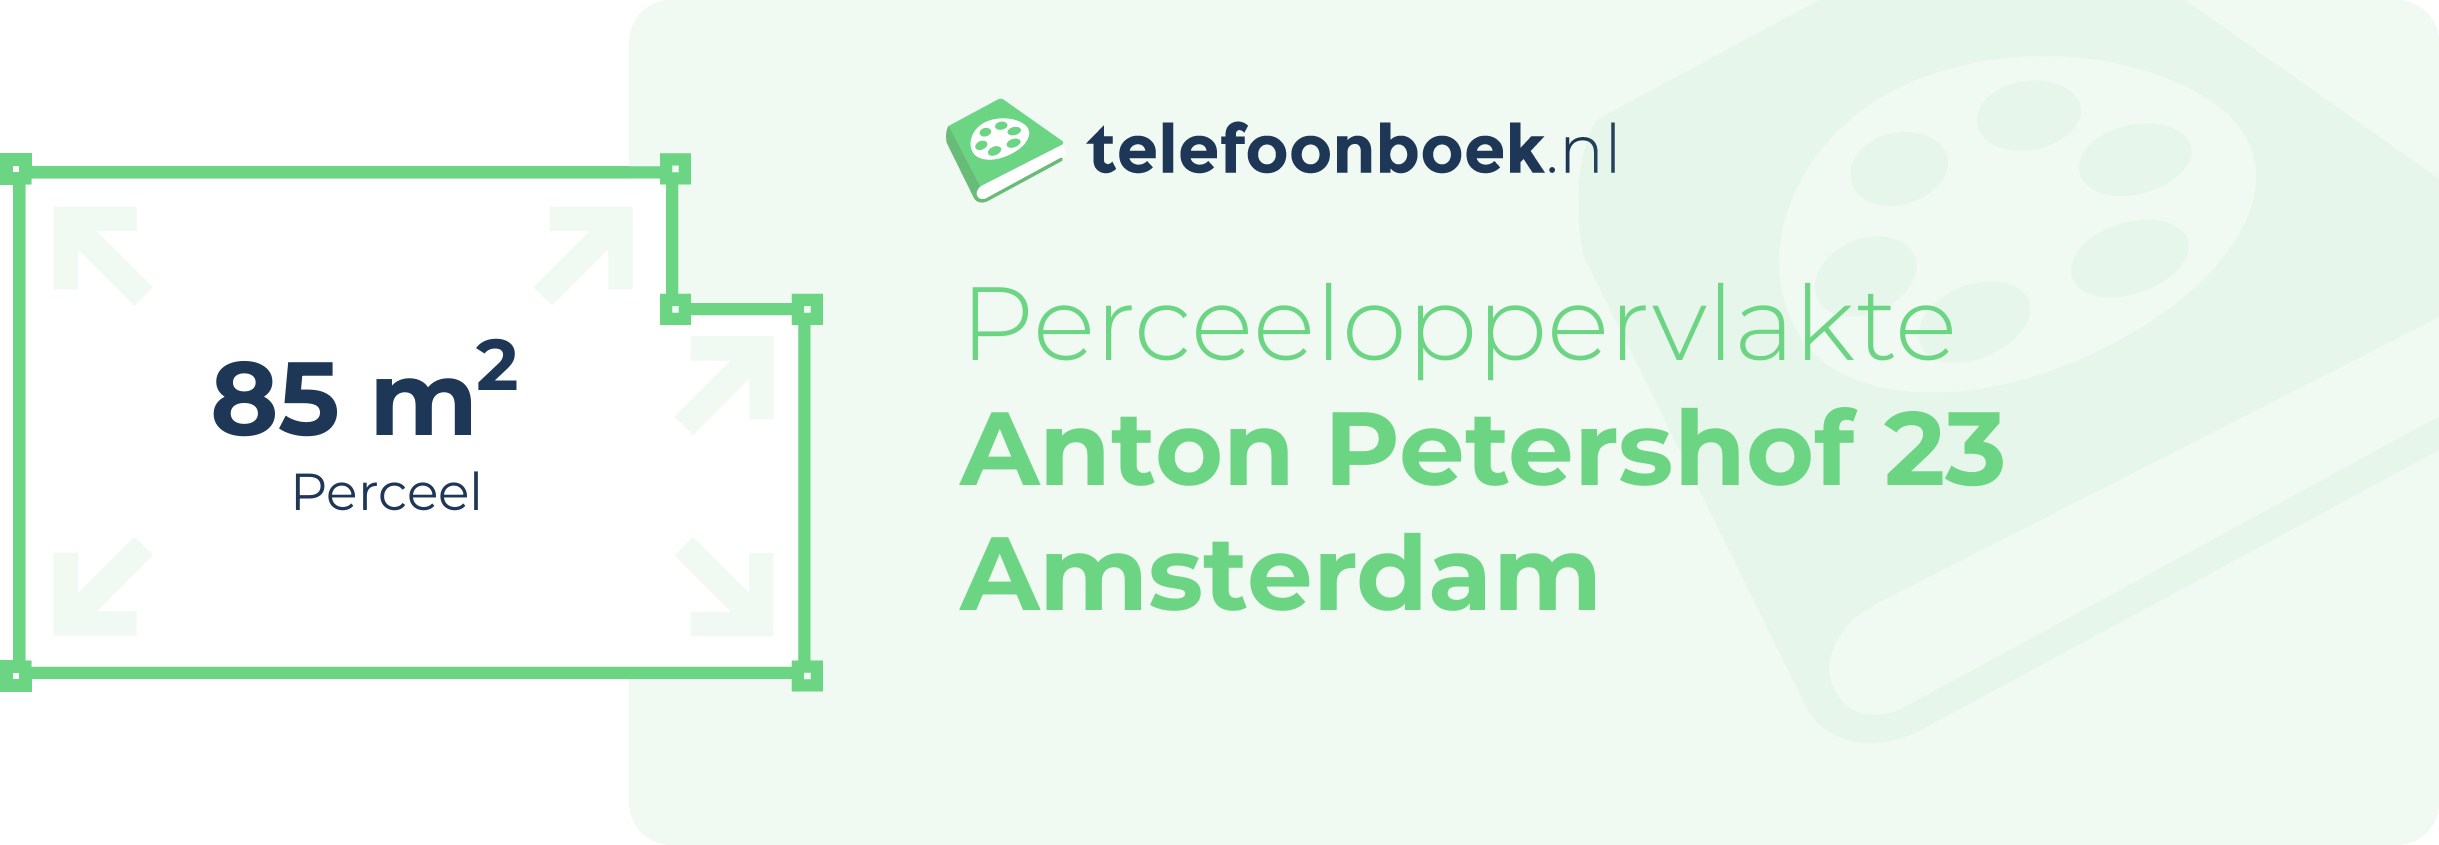 Perceeloppervlakte Anton Petershof 23 Amsterdam